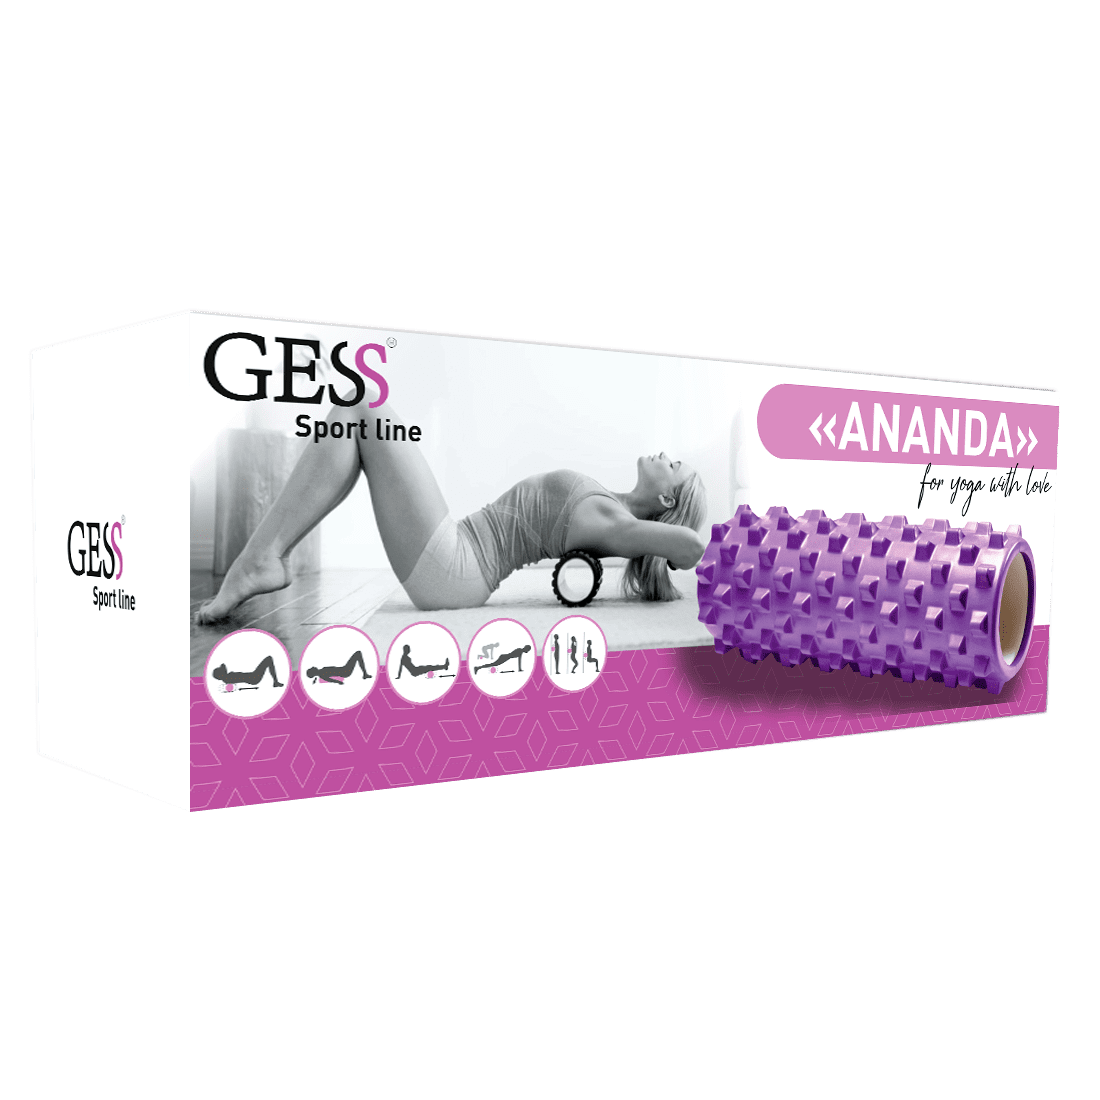 ANANDA-GESS-094-5.png